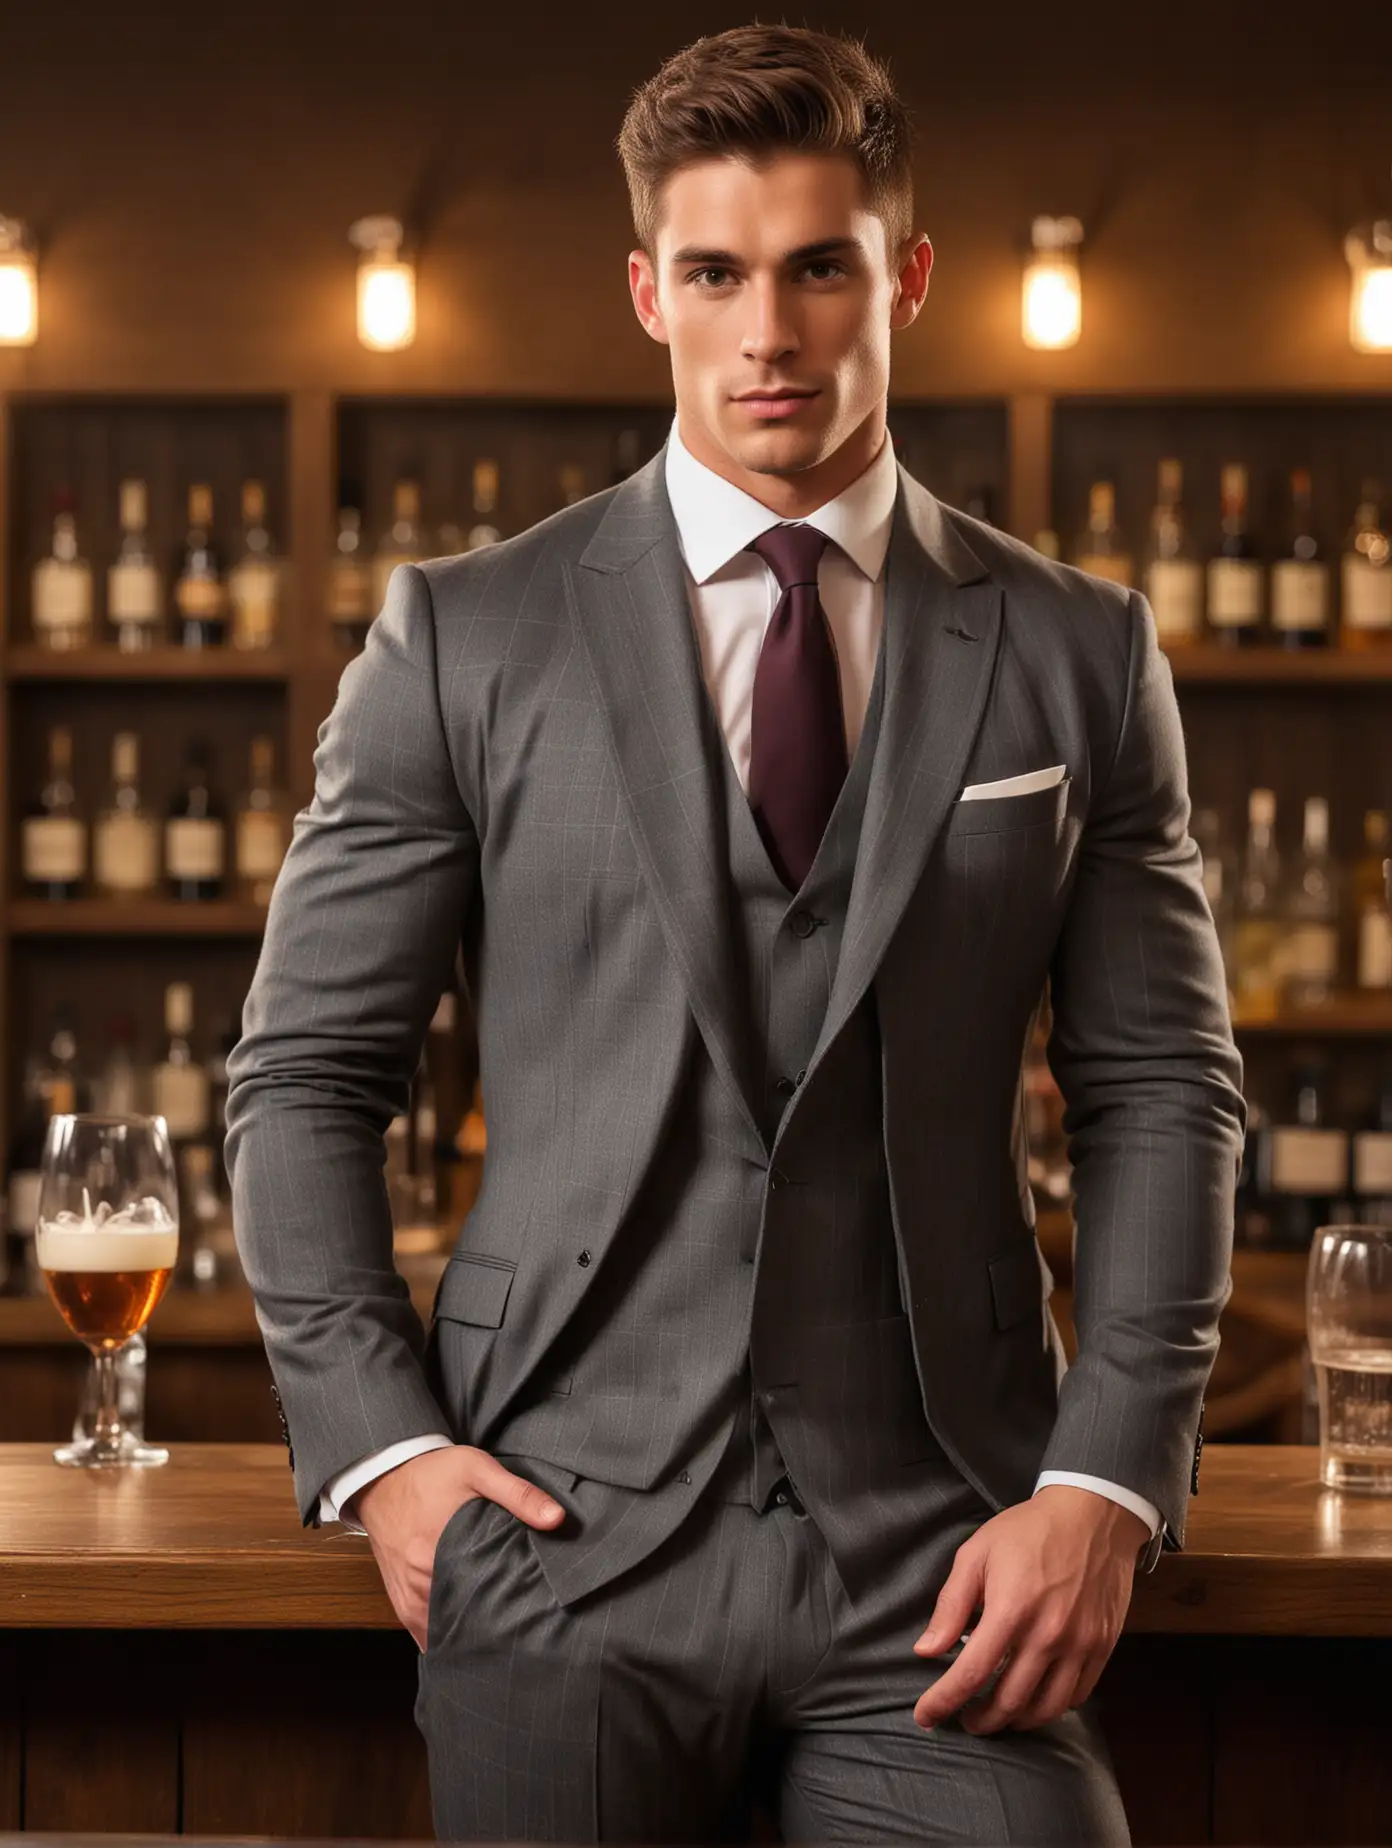 Confident British Male Model in Elegant Suit Poses at Bar